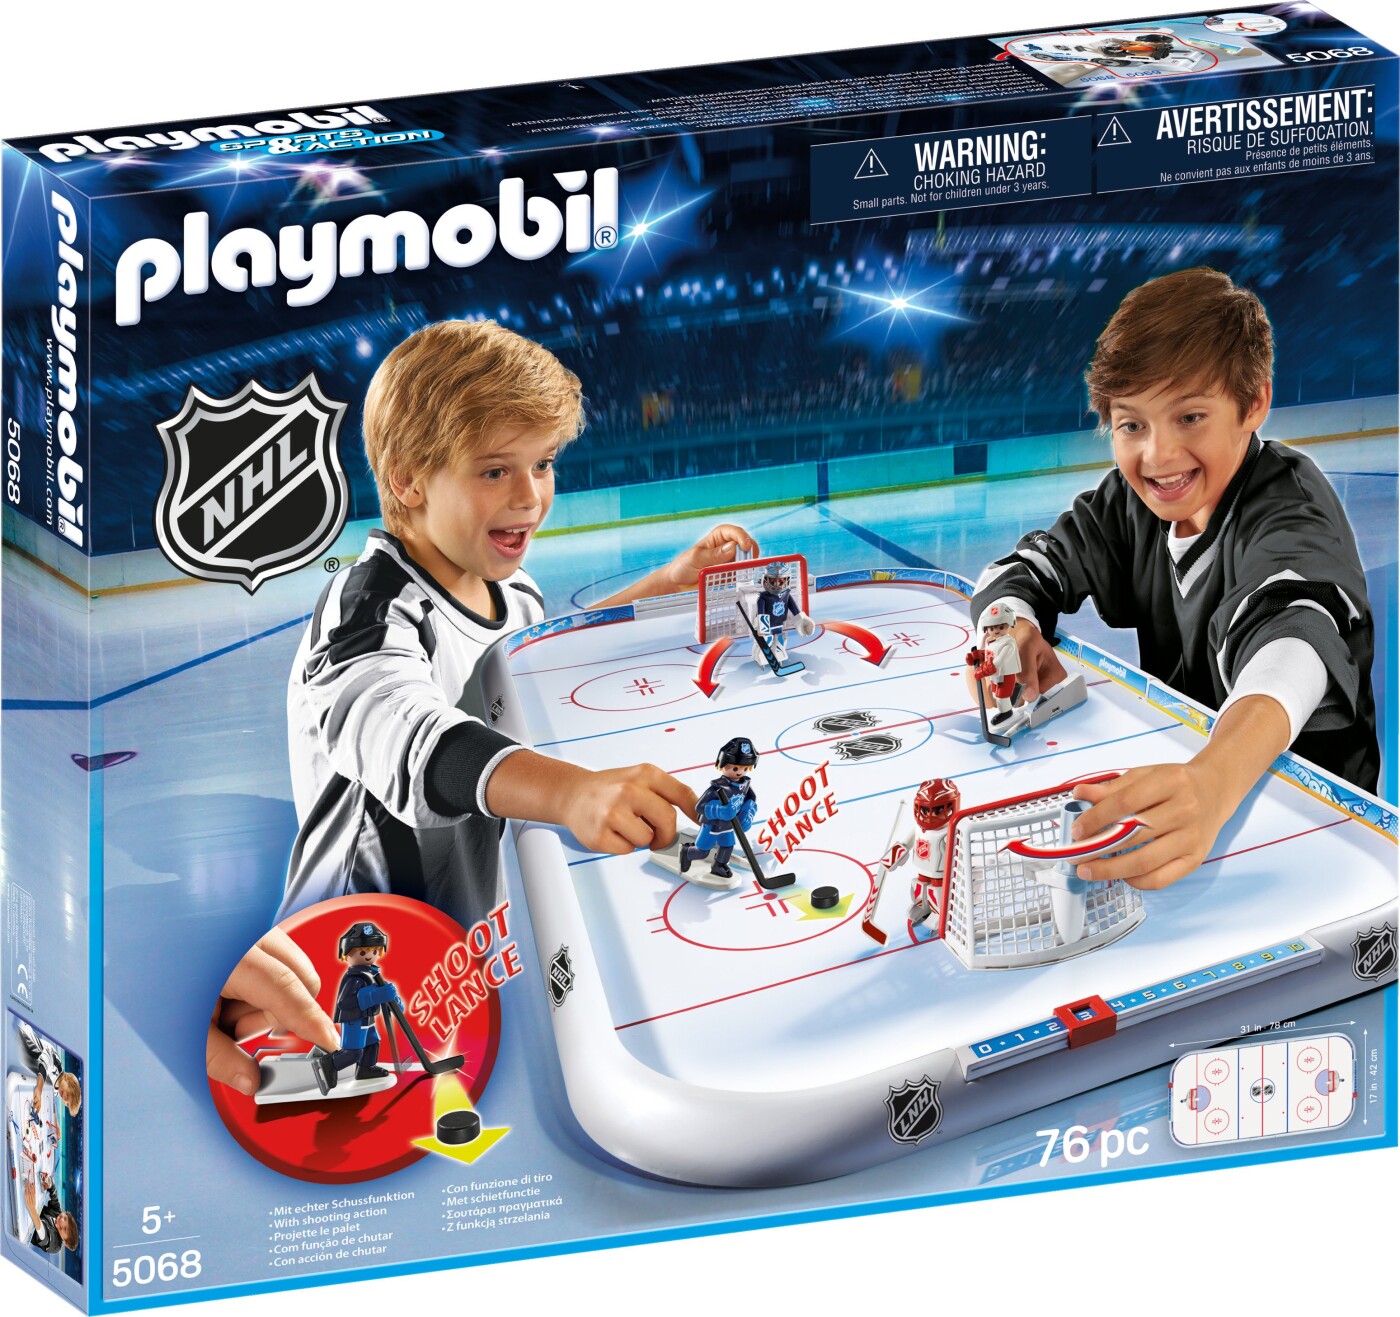 Billede af Playmobil - Nhl Hockey Arena - 5068